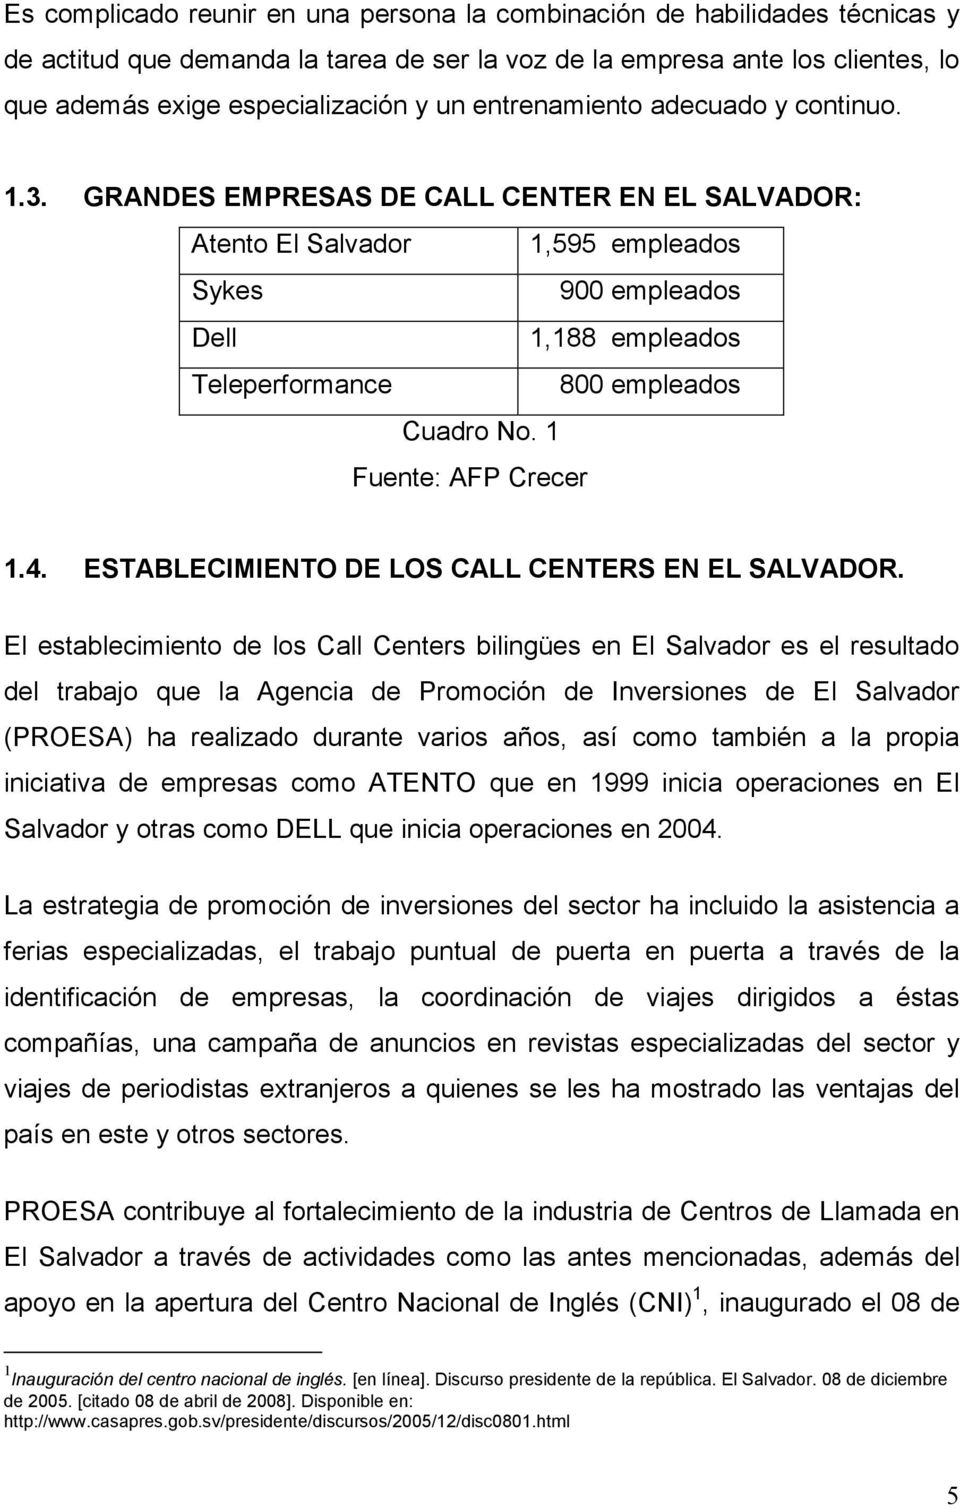 GRANDES EMPRESAS DE CALL CENTER EN EL SALVADOR: Atento El Salvador 1,595 empleados Sykes 900 empleados Dell 1,188 empleados Teleperformance 800 empleados Cuadro No. 1 Fuente: AFP Crecer 1.4.